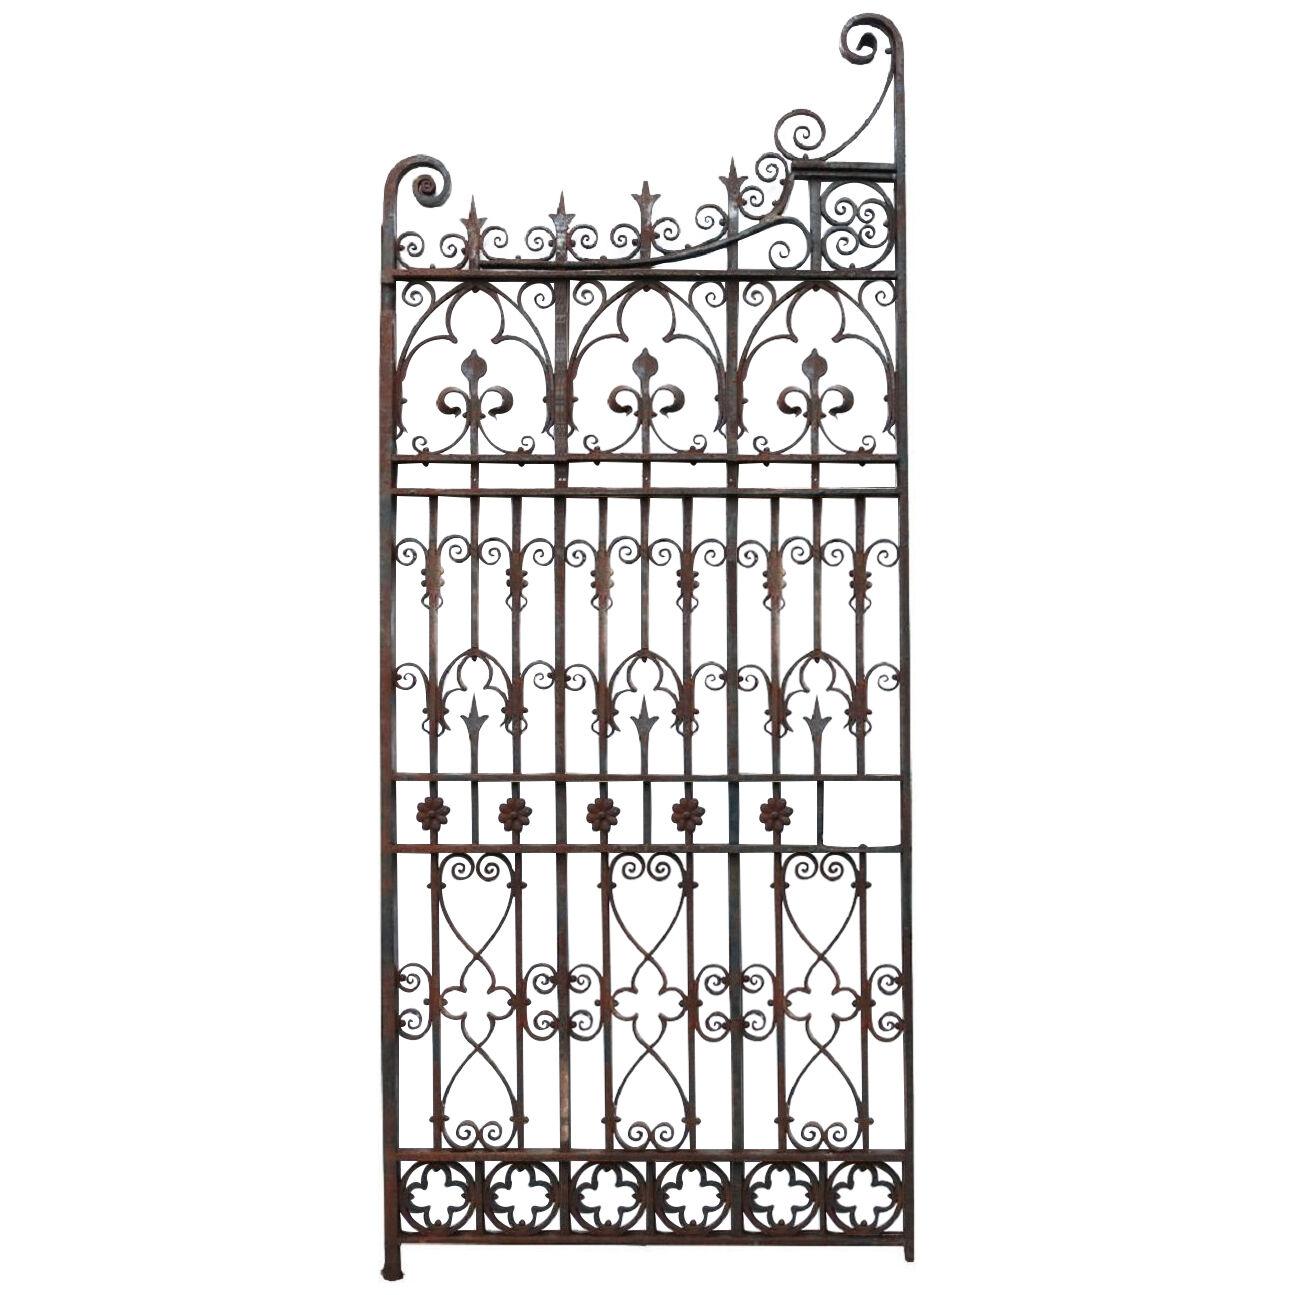 An Antique English Wrought Iron Garden Gate